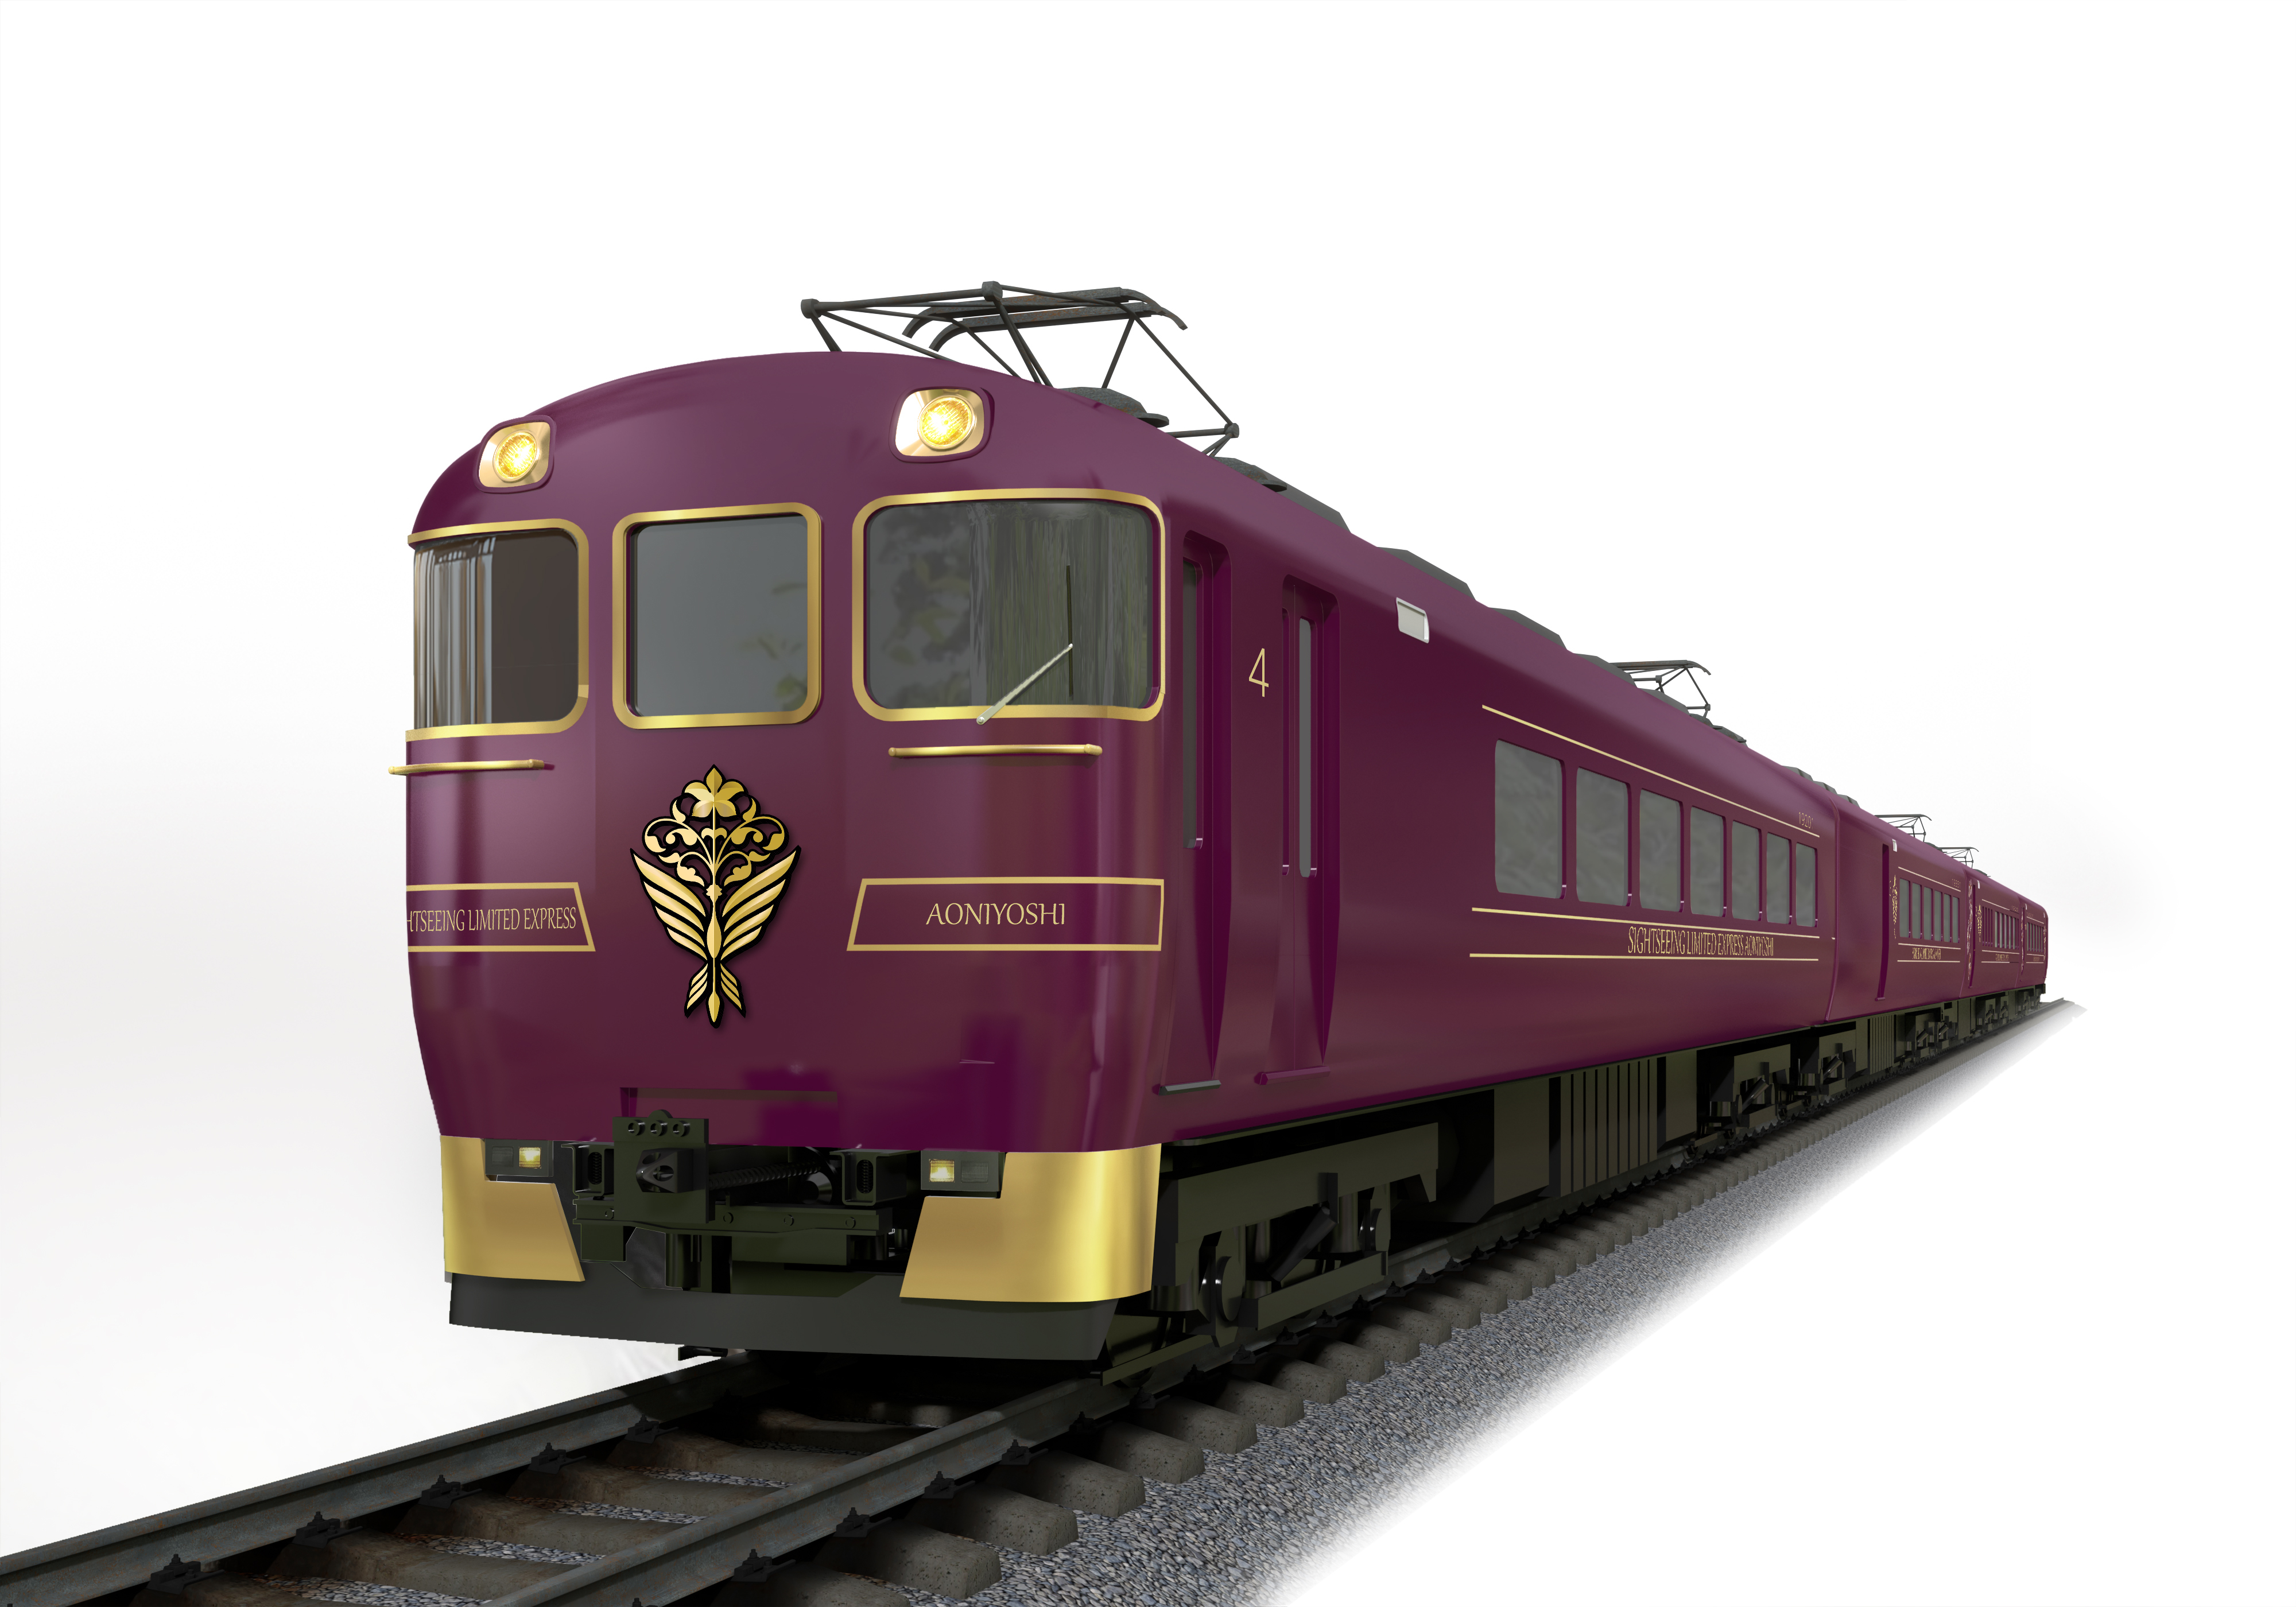 ２０２２年４月２９日に大阪 奈良 京都を結ぶ観光特急 あをによし がデビュー 近畿日本鉄道株式会社のプレスリリース